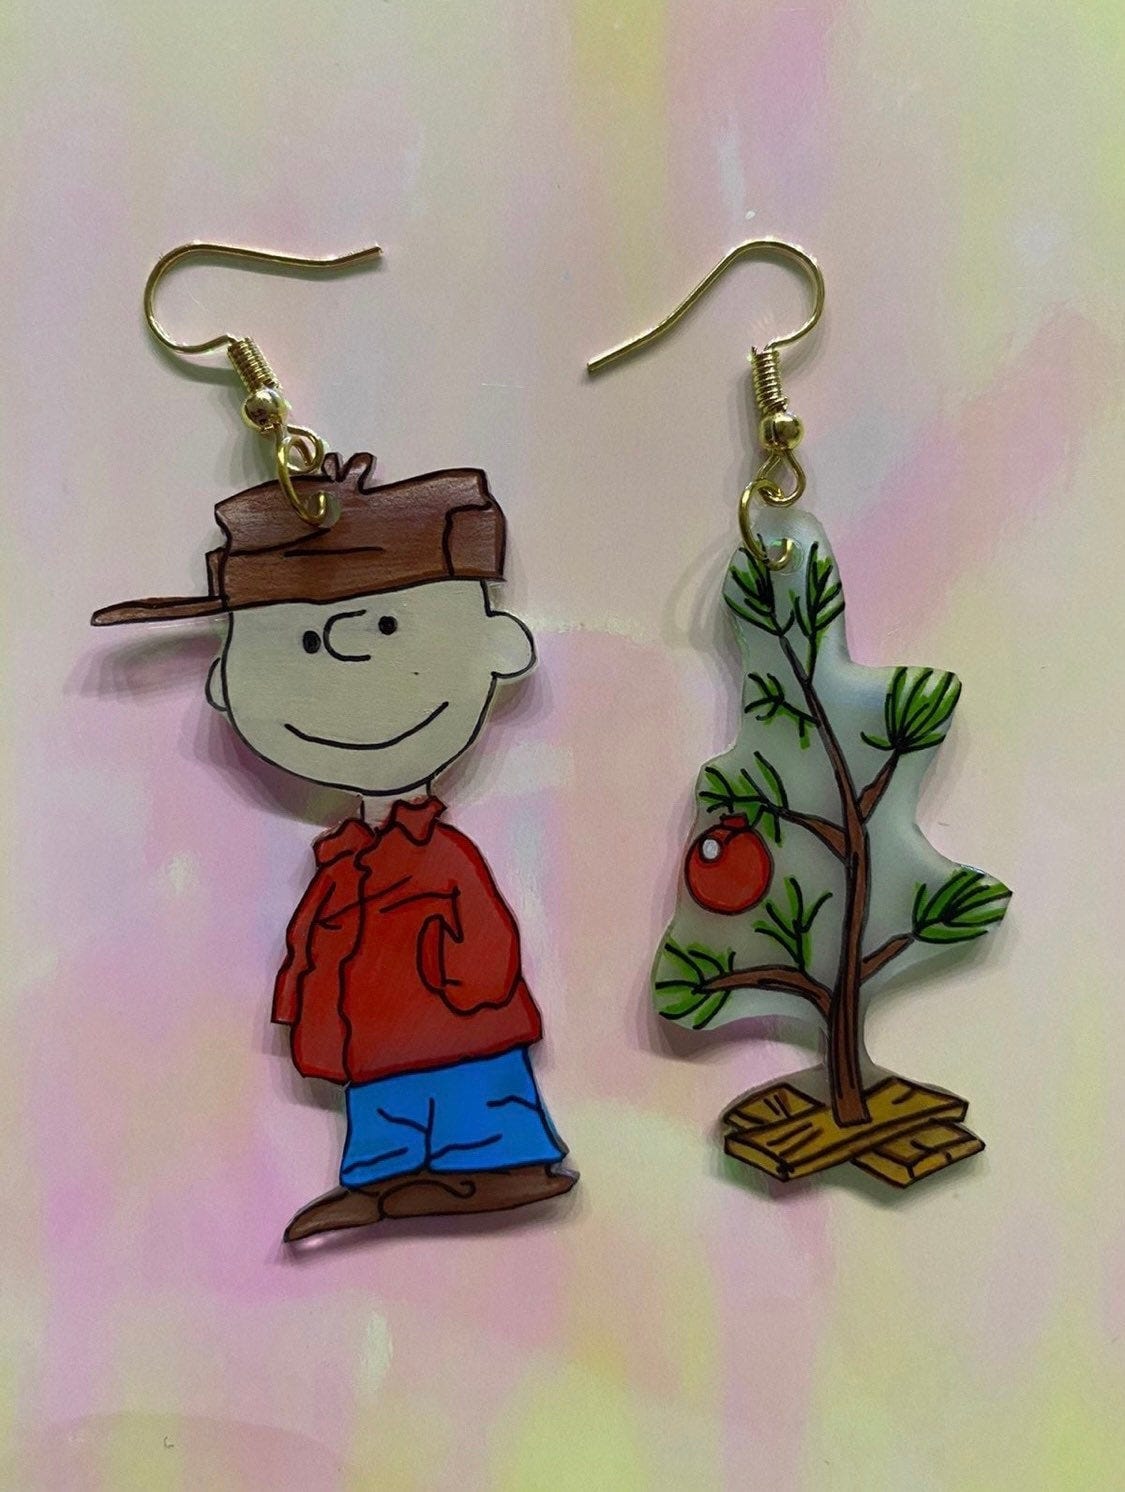 Charlie Brown Christmas Tree earrings!